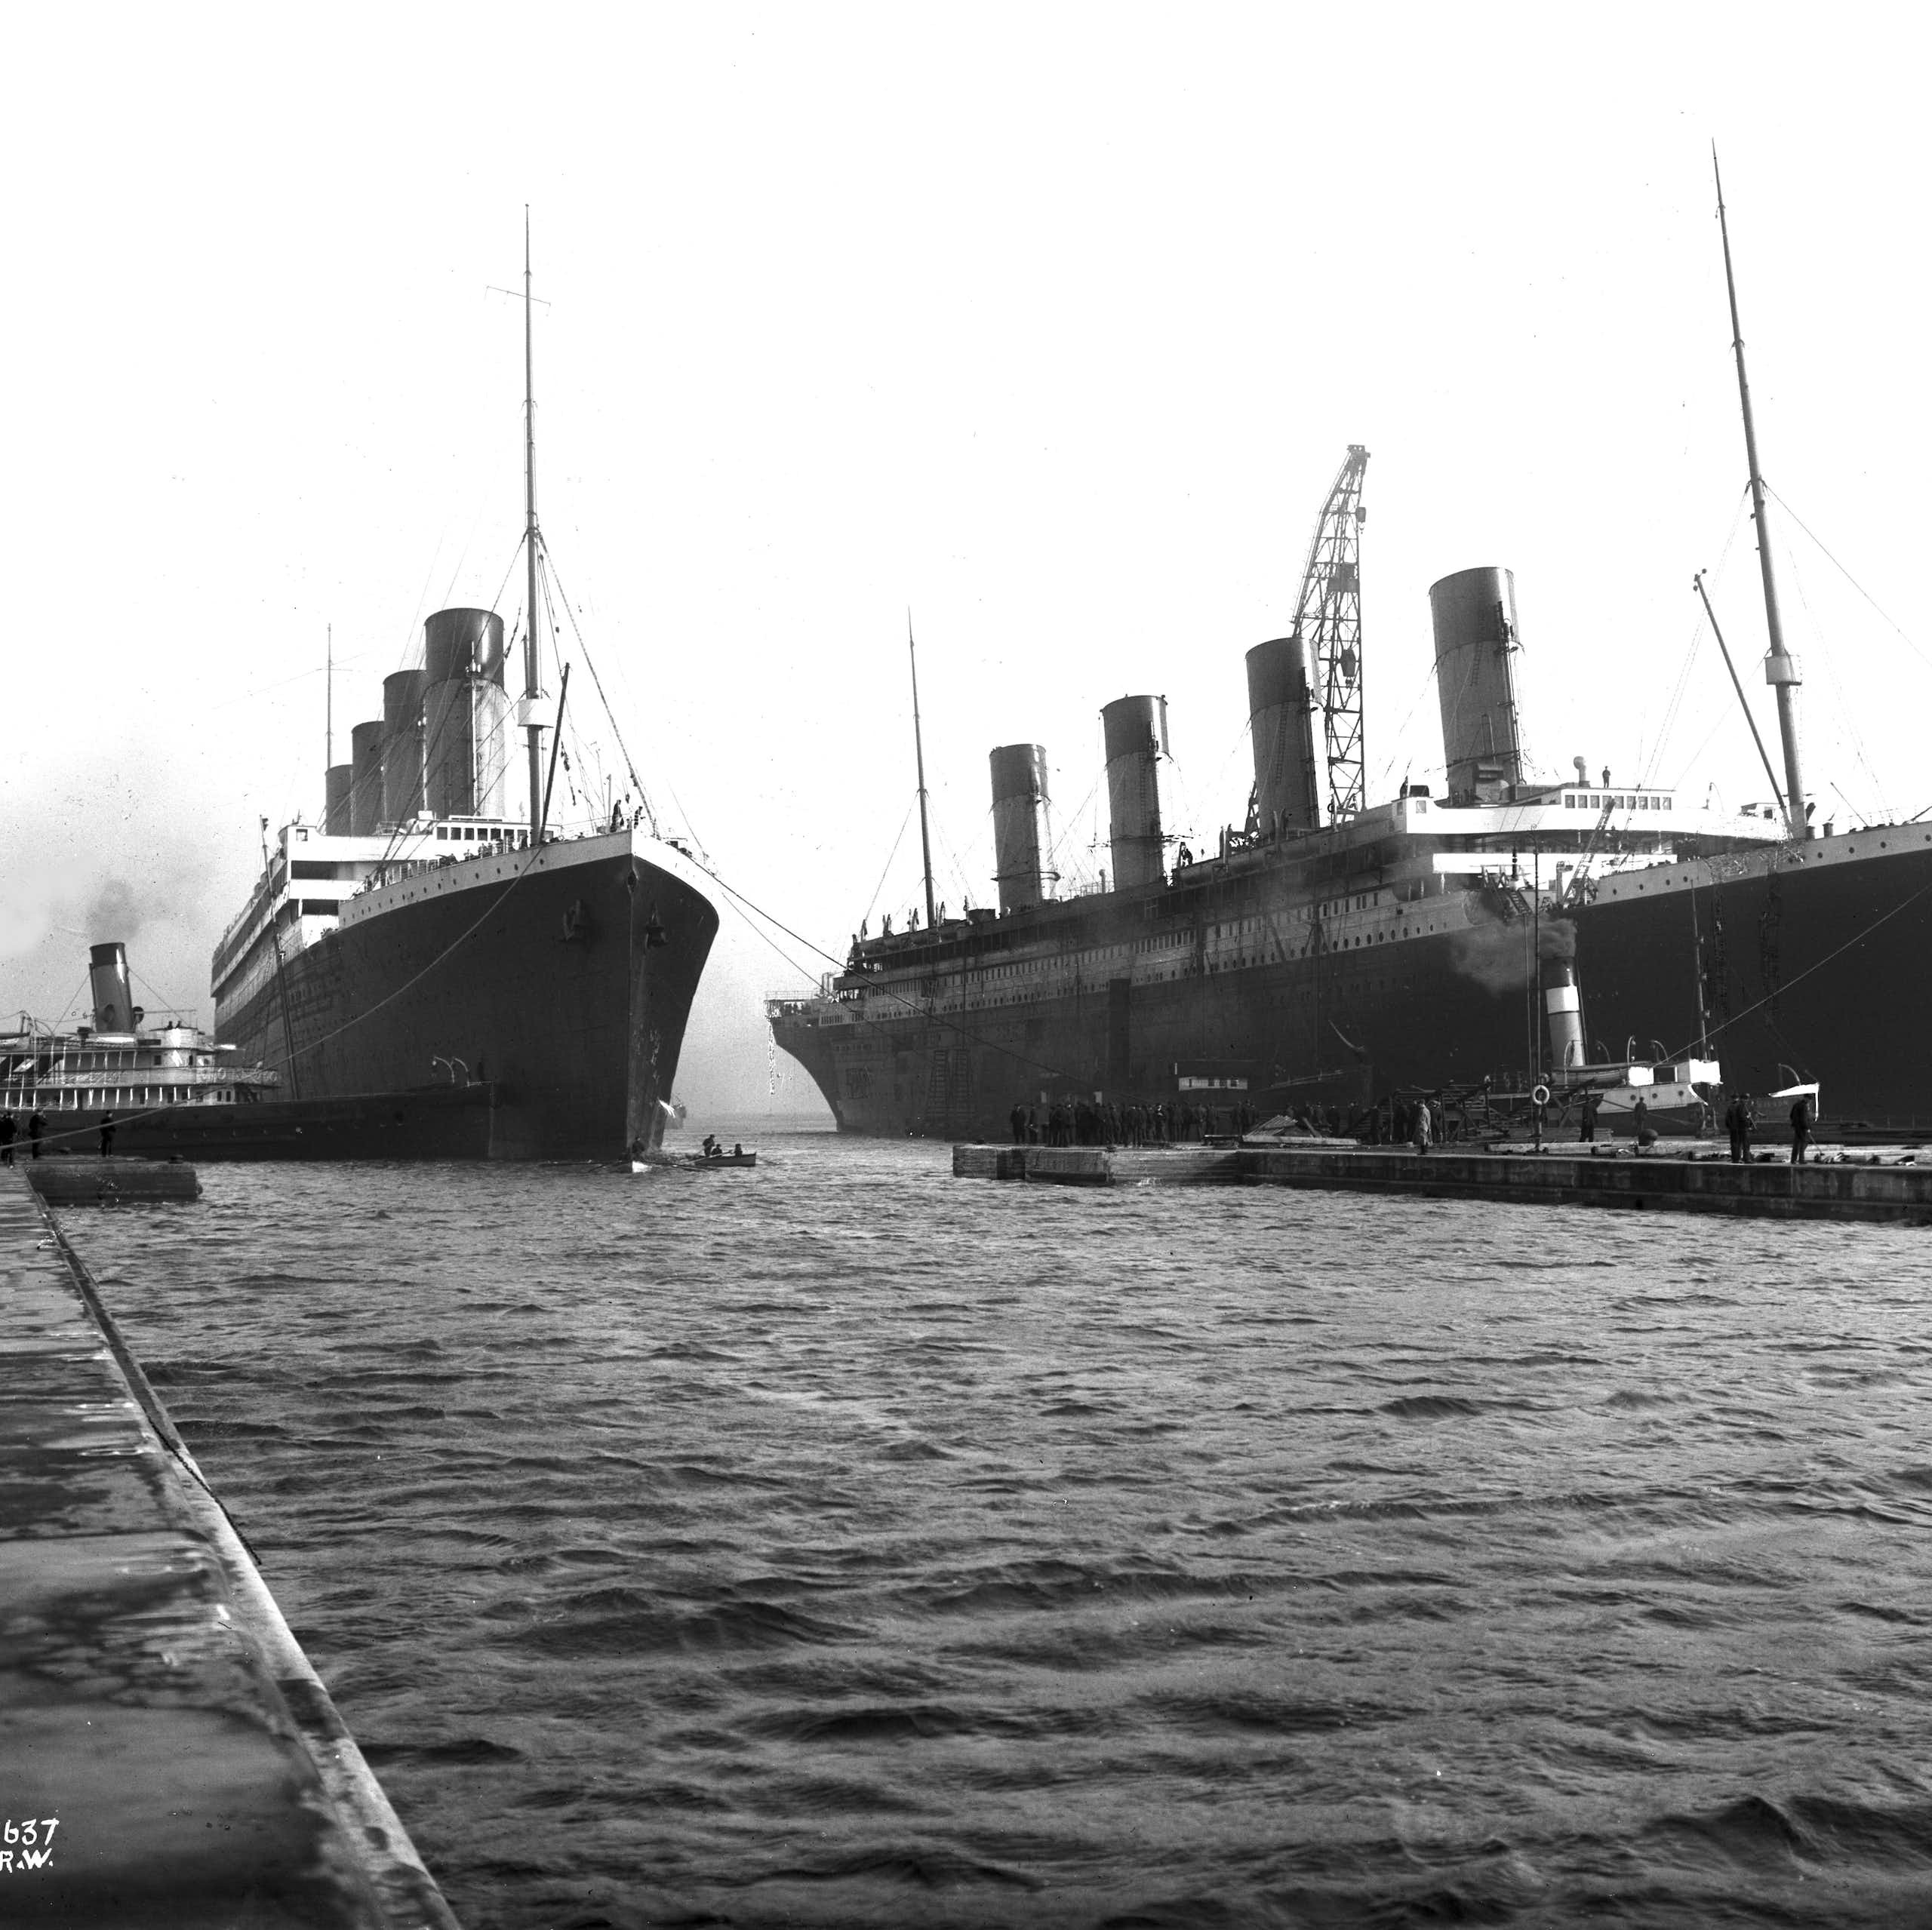 Un nouveau Titanic : le naufrage annoncé d'un projet de réplique